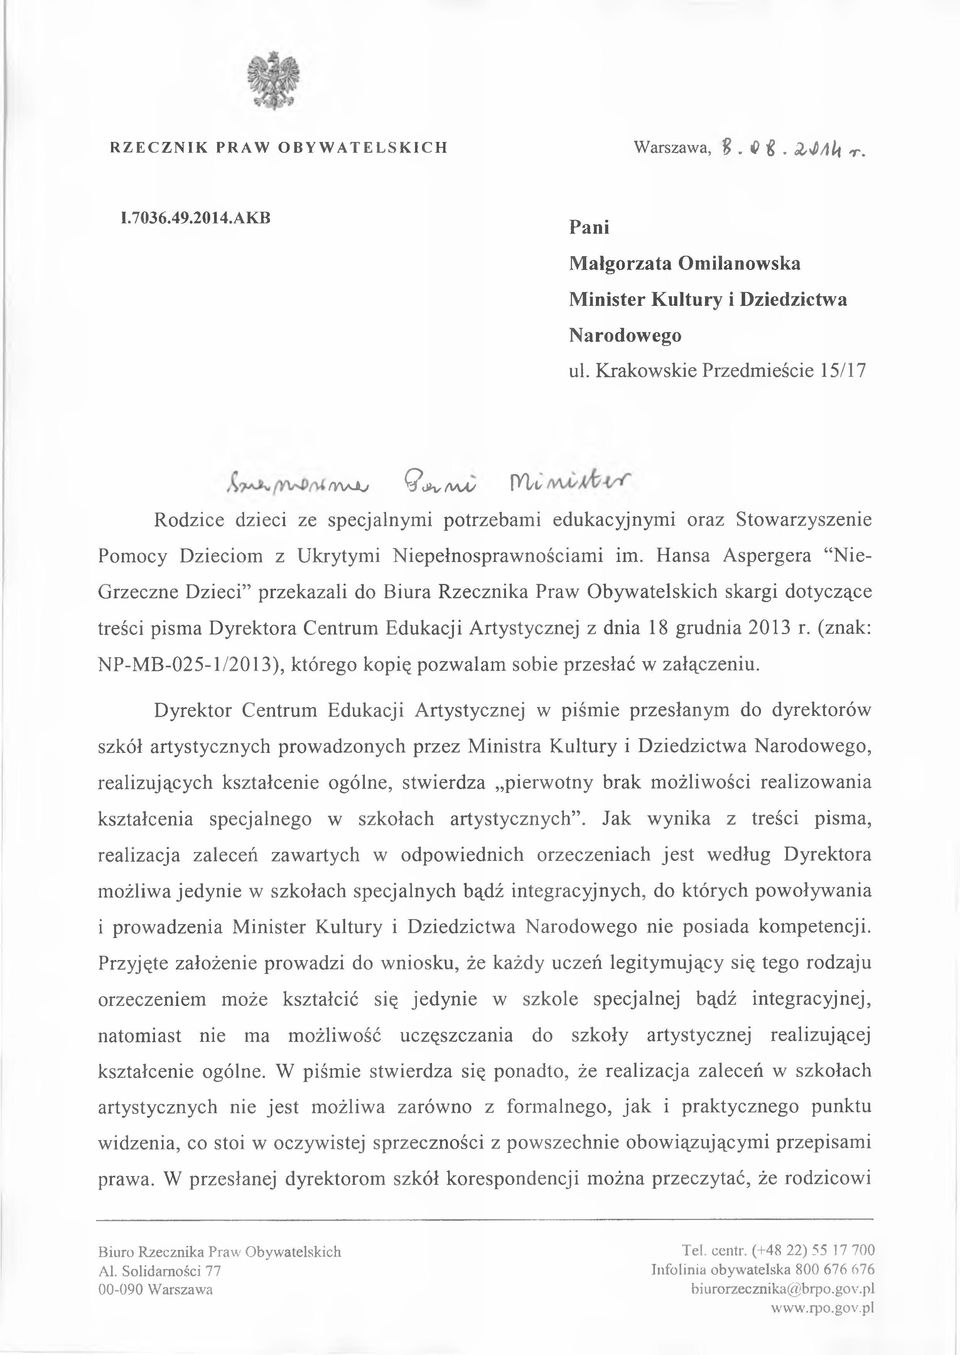 Hansa Aspergera Nie- Grzeczne Dzieci przekazali do Biura Rzecznika Praw Obywatelskich skargi dotyczące treści pisma Dyrektora Centrum Edukacji Artystycznej z dnia 18 grudnia 2013 r.